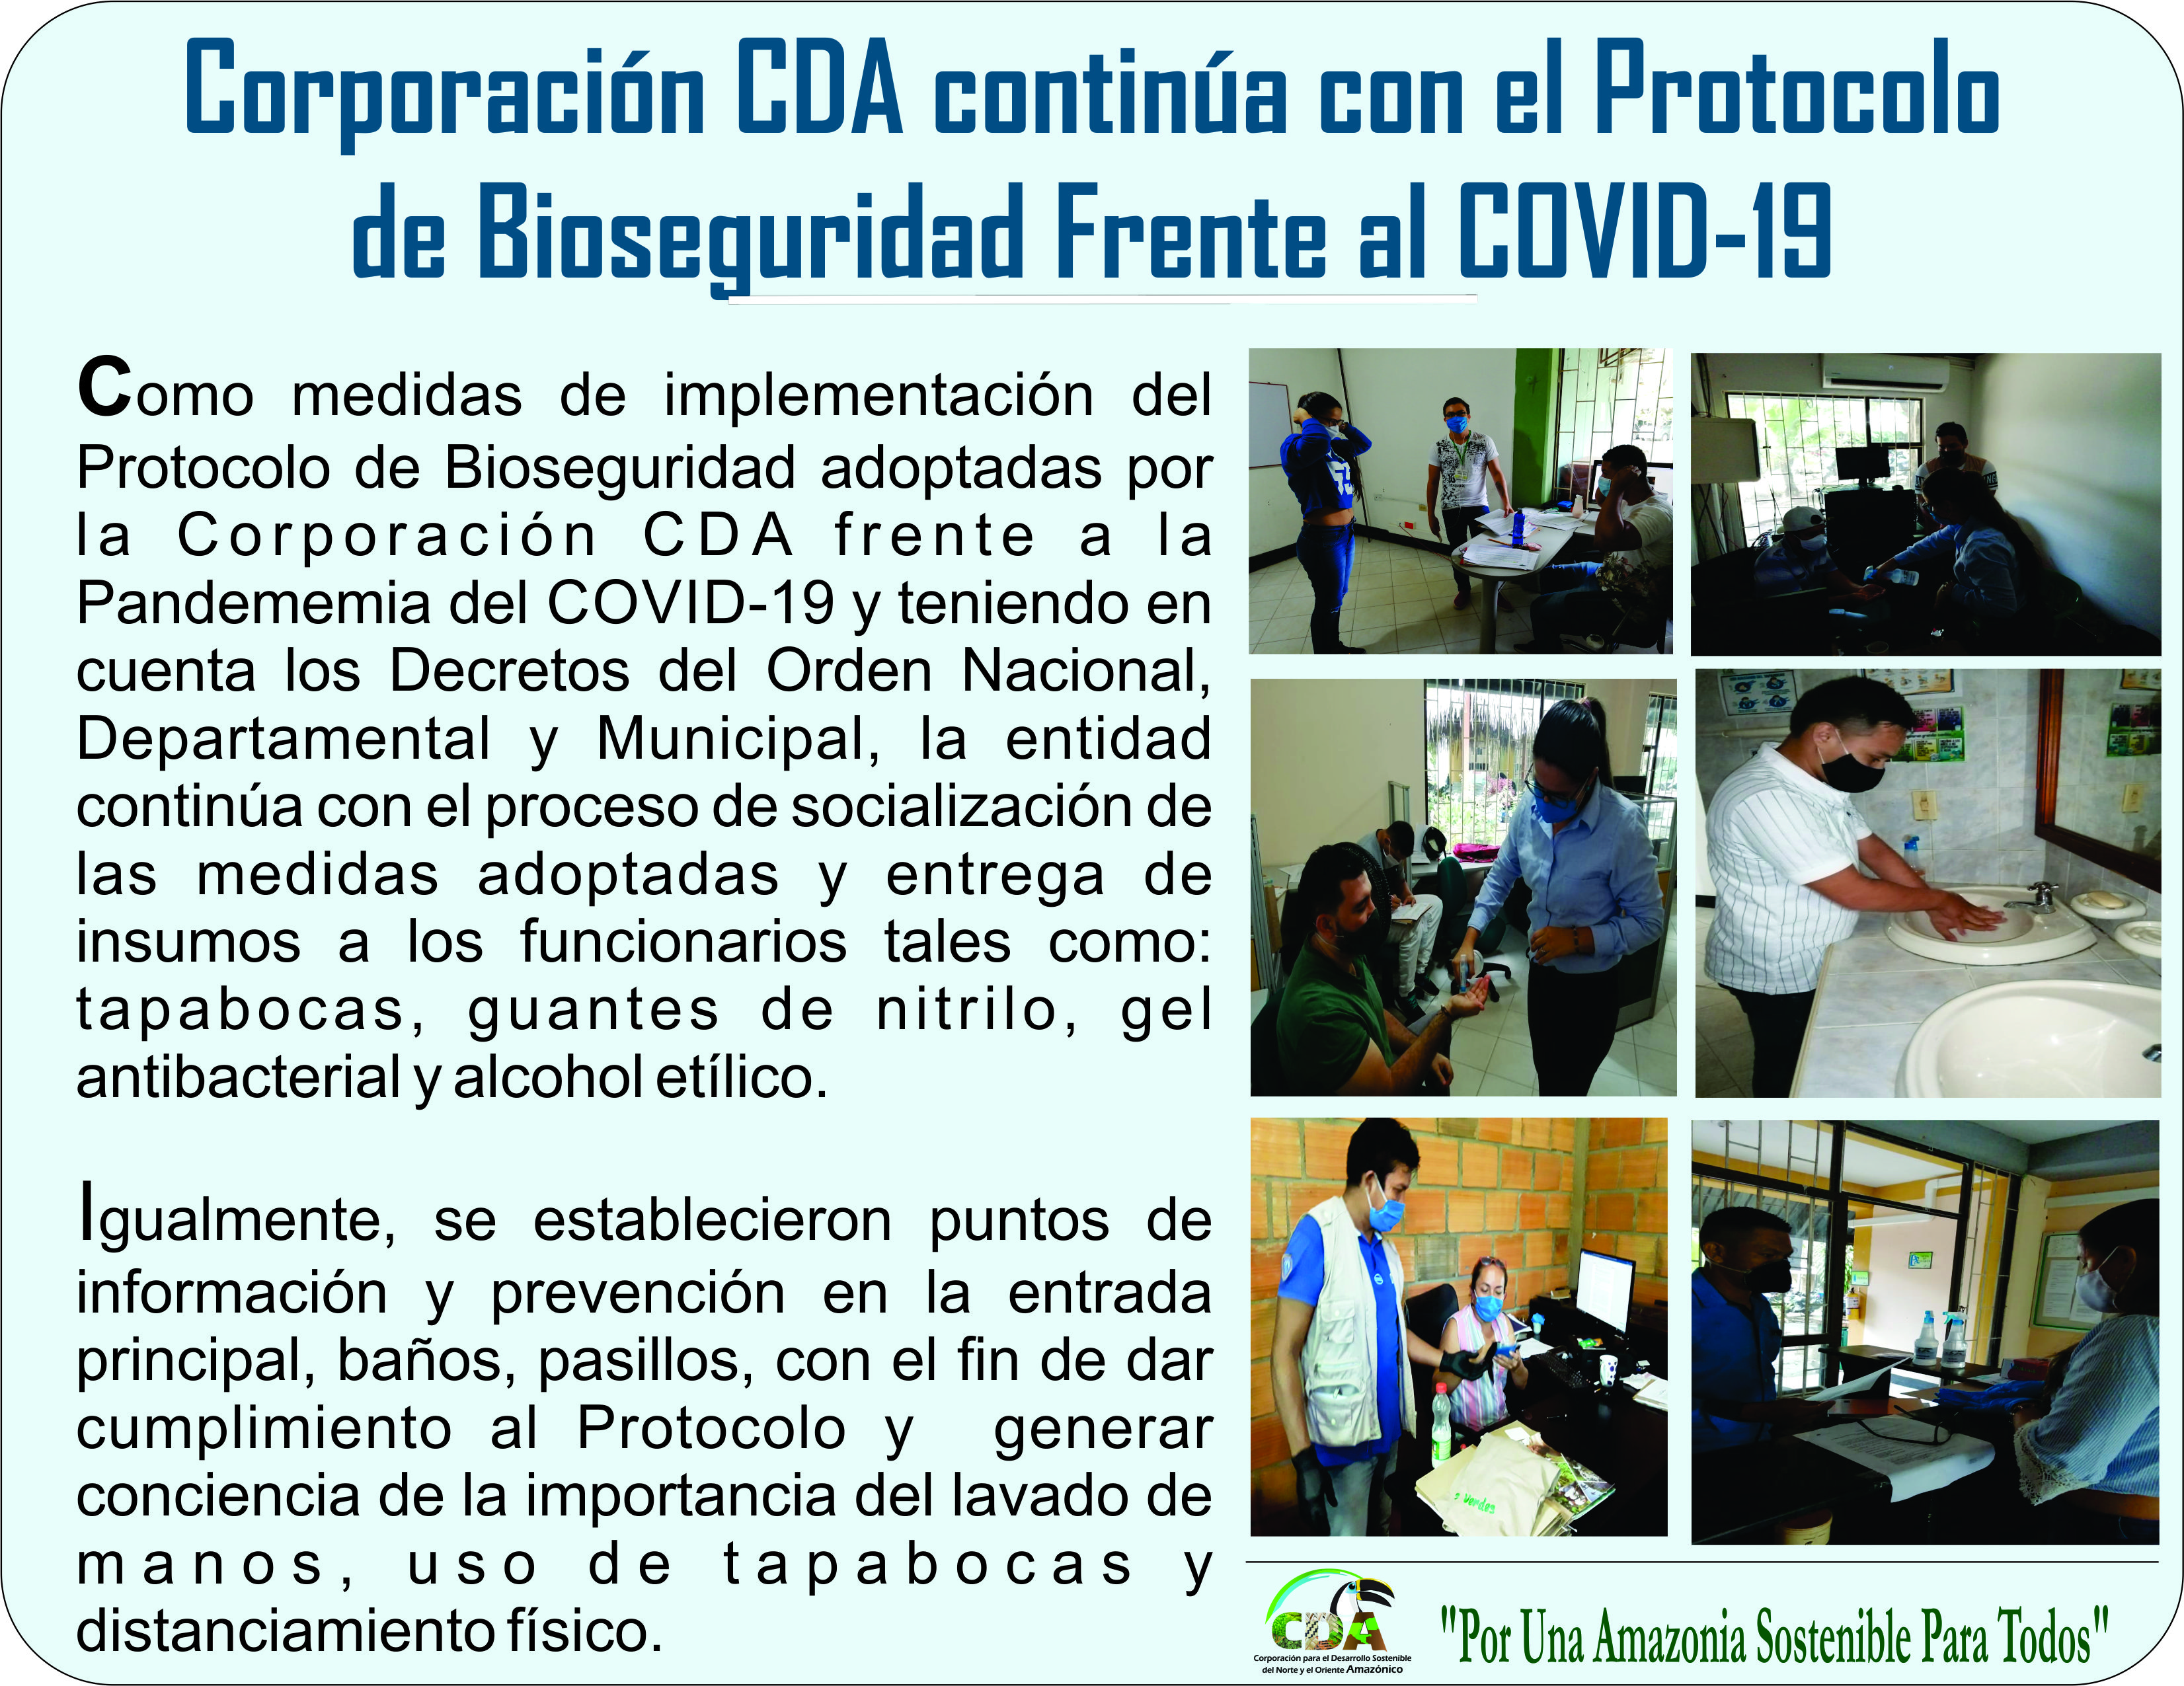 Gráfica alusiva a la noticia Corporación CDA, continúa con el Protocolo de Bioseguridad frente al Covid-19